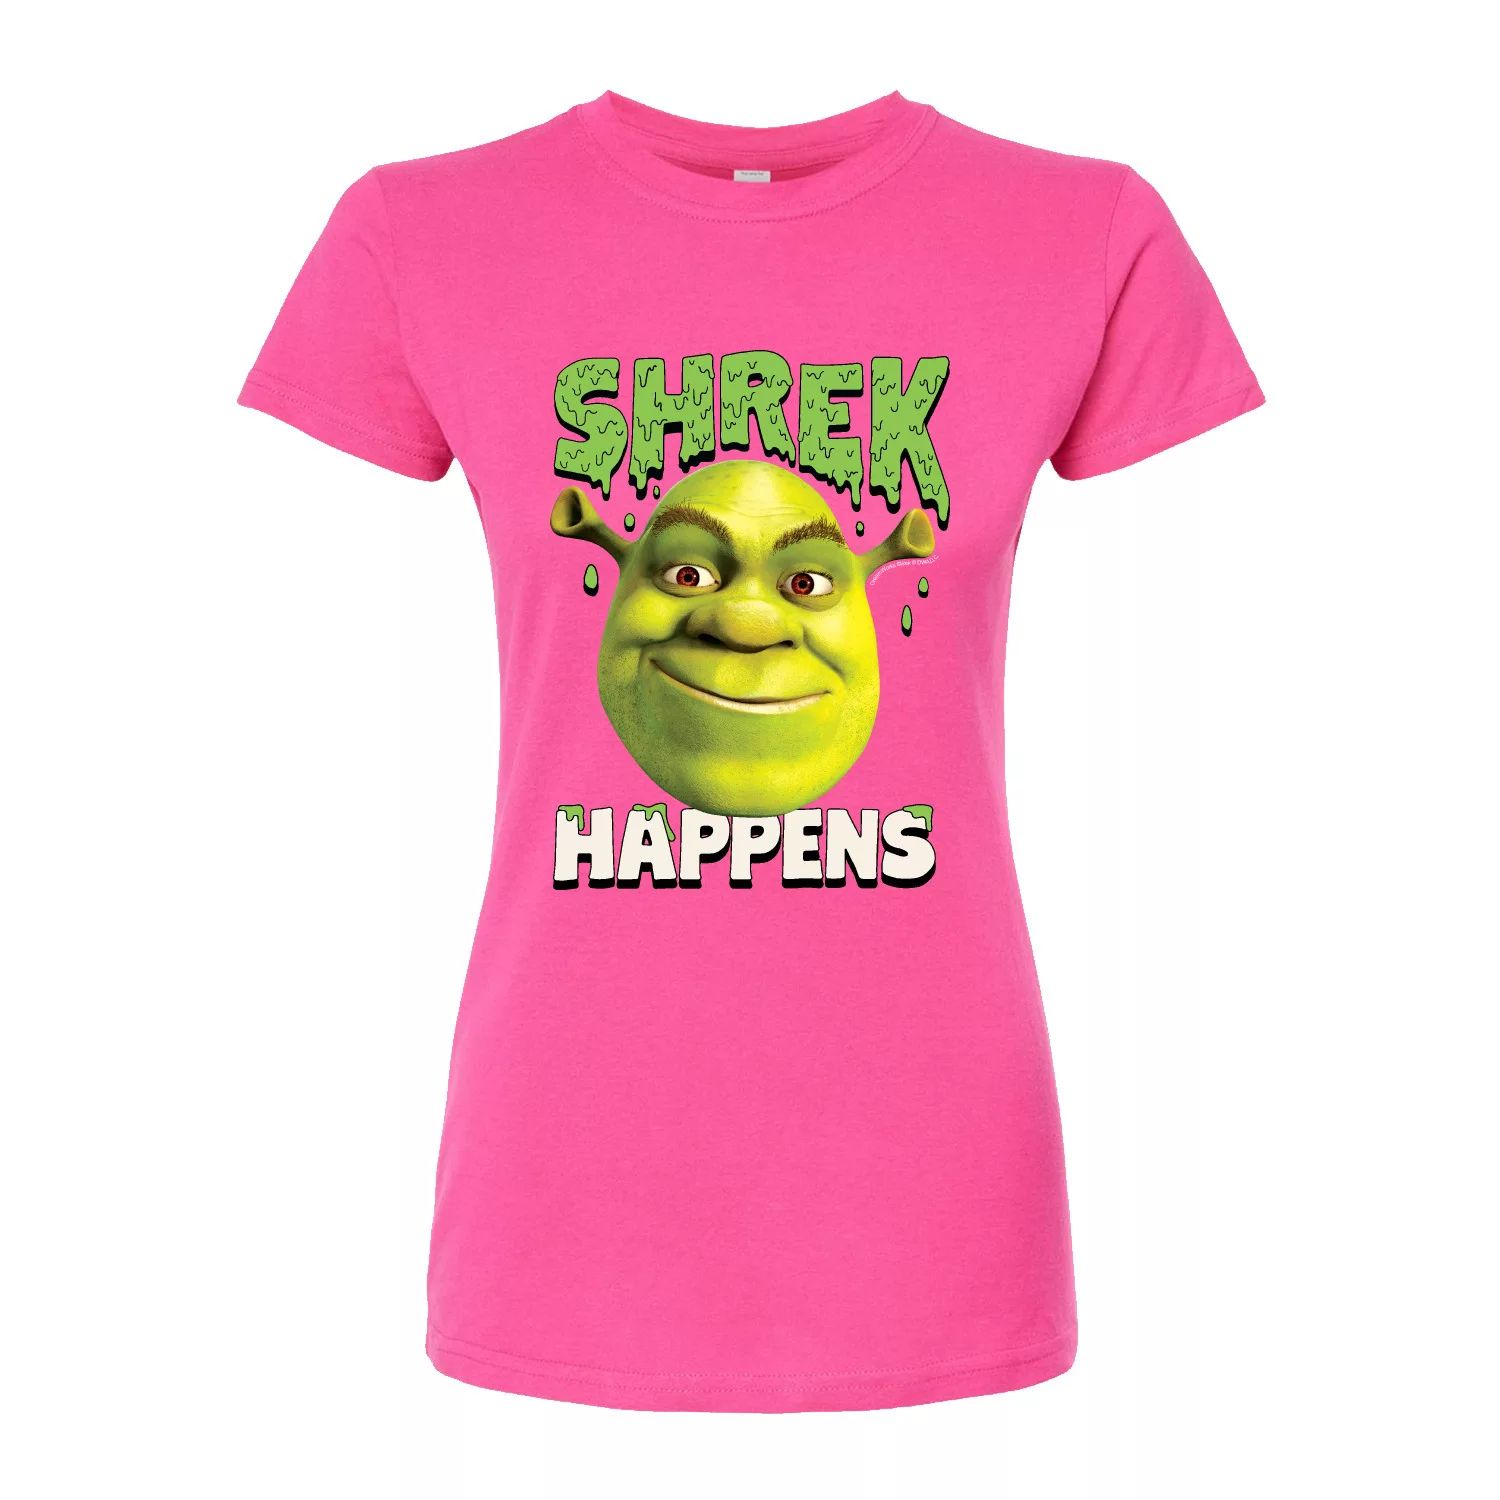 Облегающая футболка Shrek Happens для юниоров Licensed Character, розовый укороченная толстовка с капюшоном для юниоров shrek happens licensed character розовый